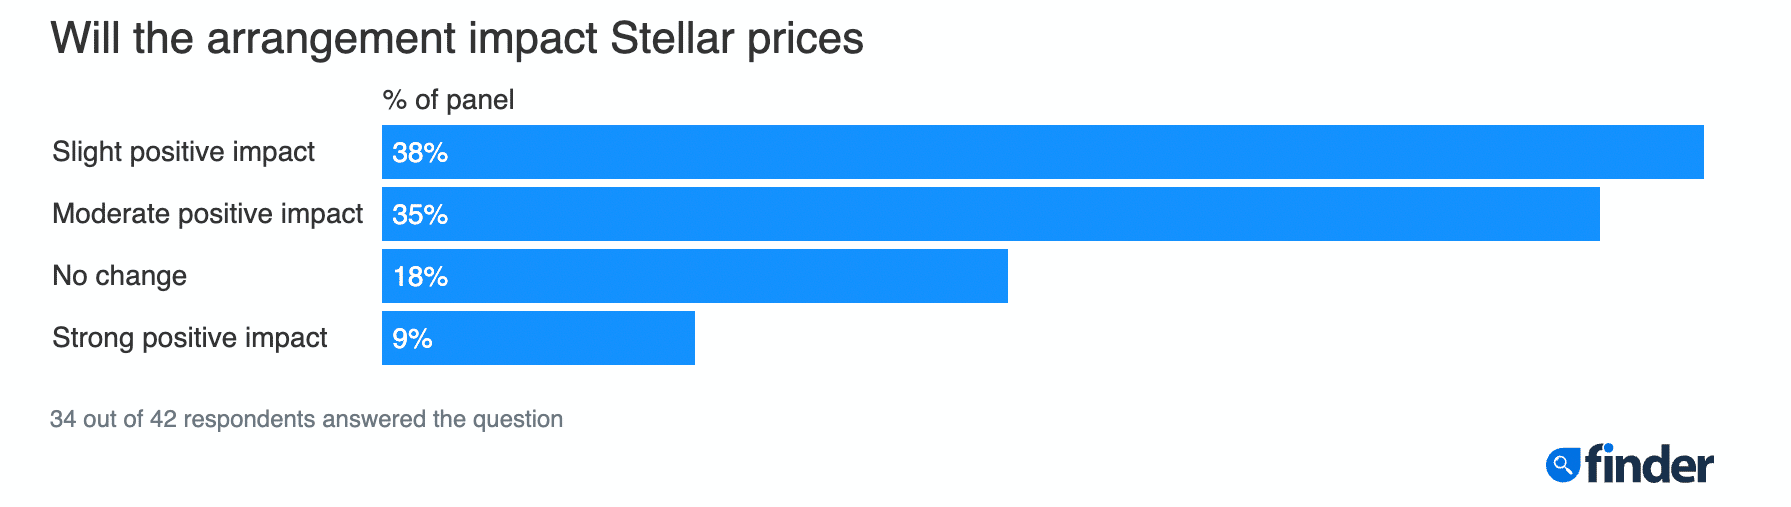 Dự đoán về giá của Stellar (XLM) 2025-30: Liệu altcoin này có tăng cao tới 200 đô la vào năm 2030 không? 45